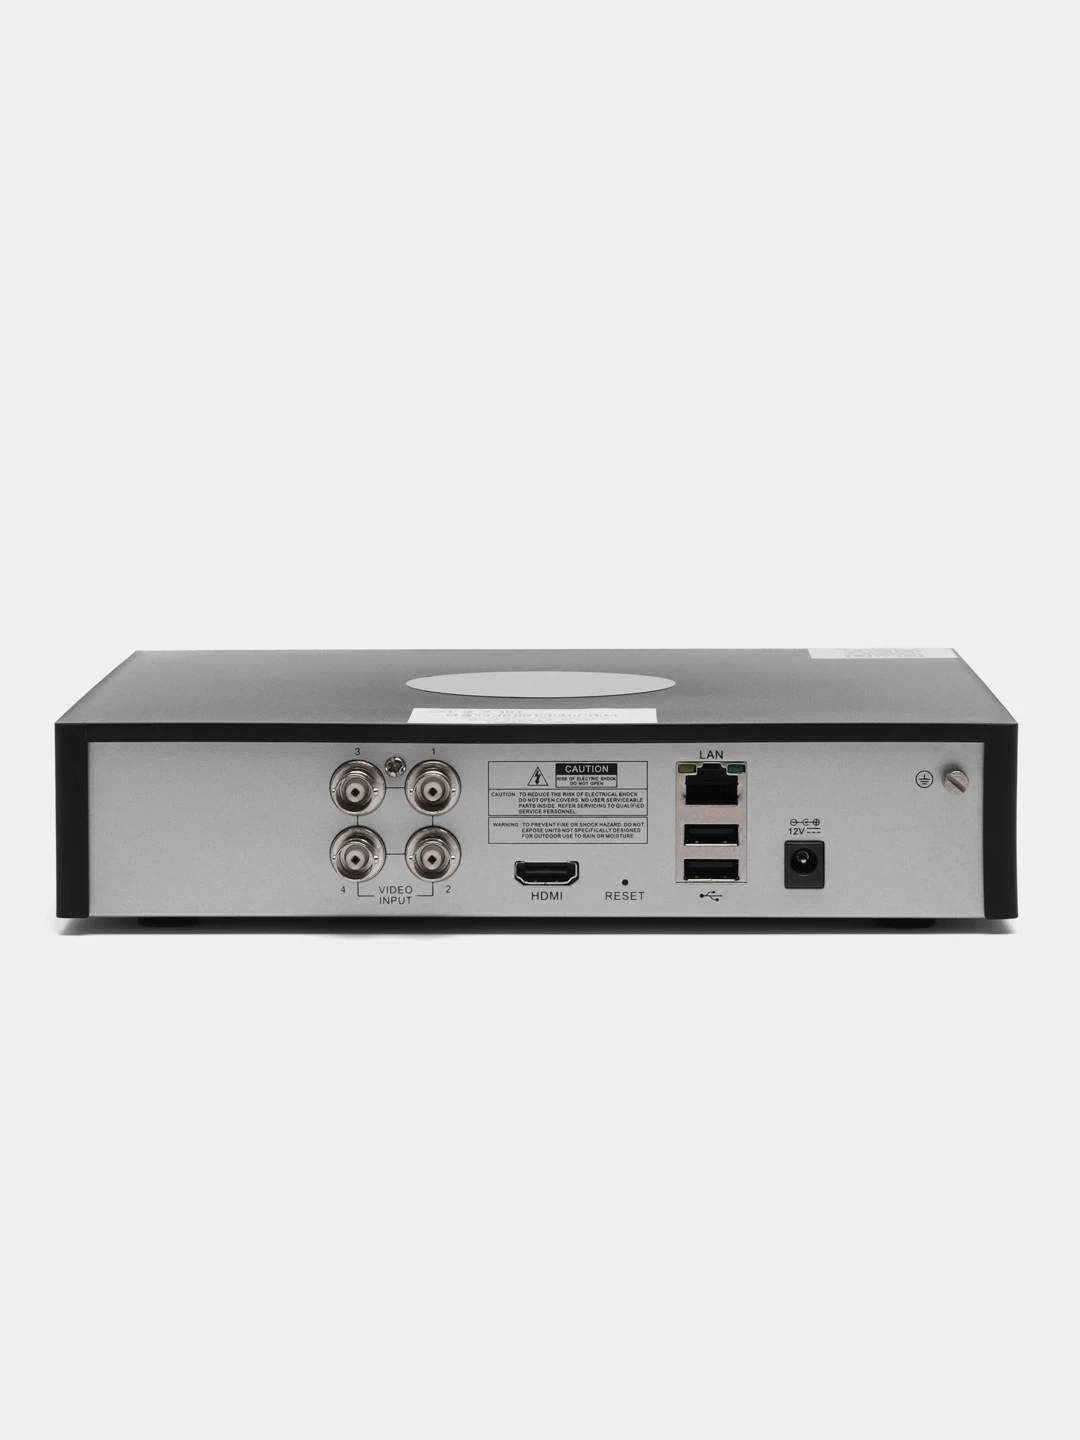 Hybrid регистратор. SVR-6110n v3.0 видеорегистратор гибридный. Видеорегистратор 8-канальный гибридный SVR-8115n v3.0 для чего он нужен.